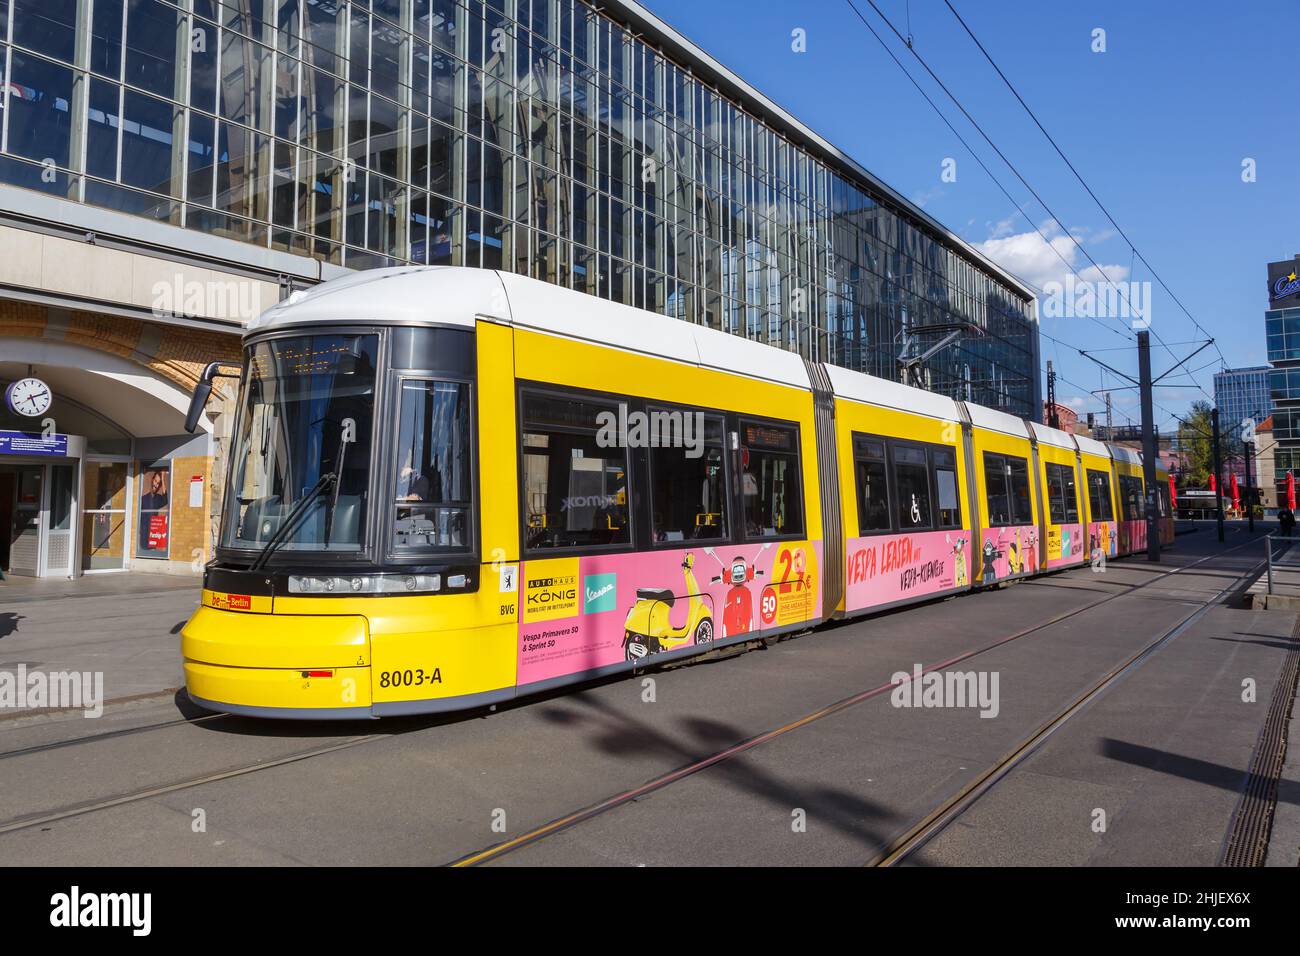 Berlino, Germania - 23 aprile 2021: Tram Bombardier Flexity trasporto pubblico ferroviario leggero alla stazione ferroviaria Alexanderplatz di Berlino, Germania. Foto Stock